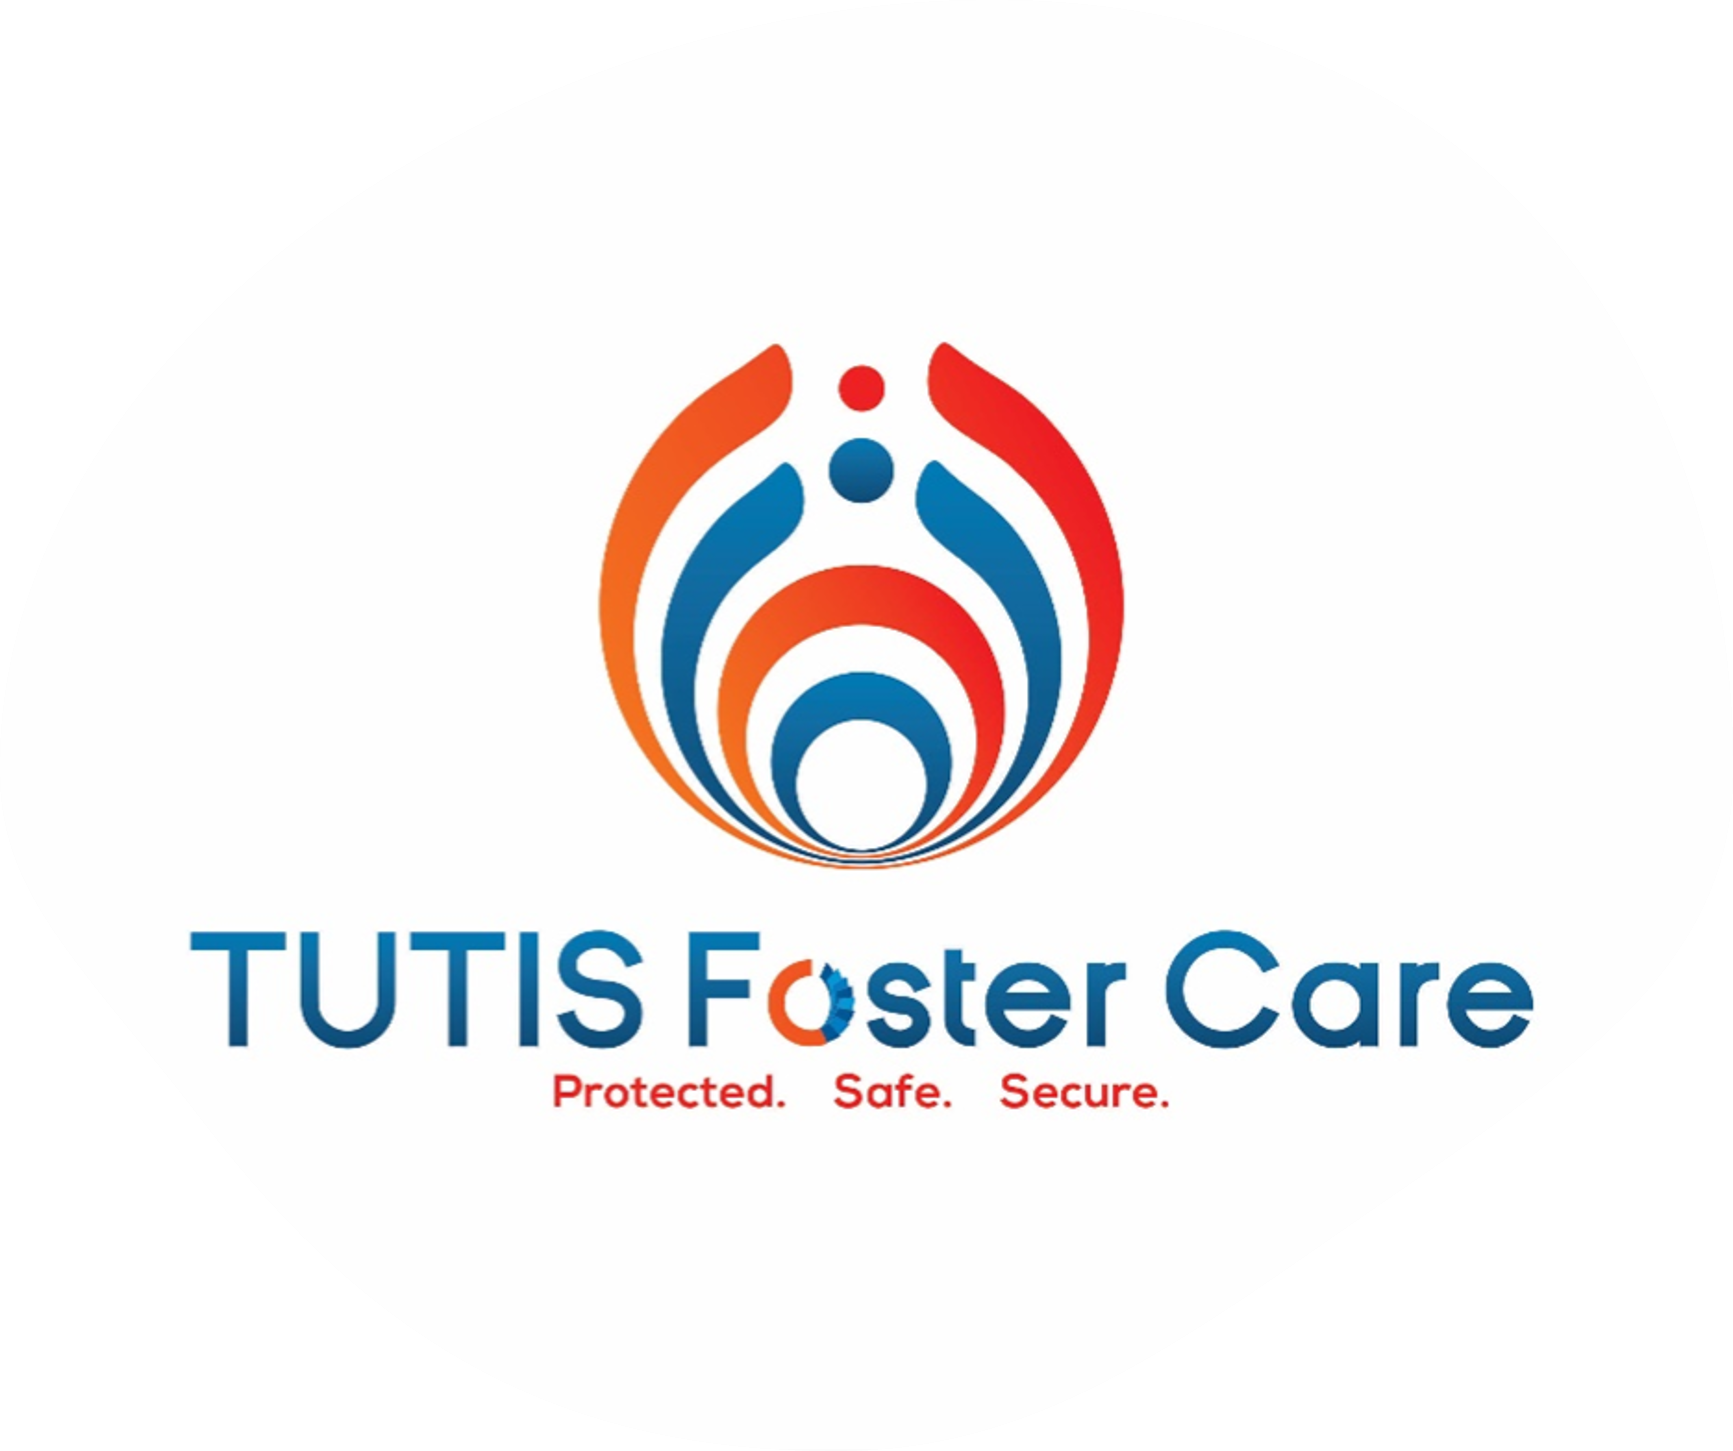 Tutis Foster Care